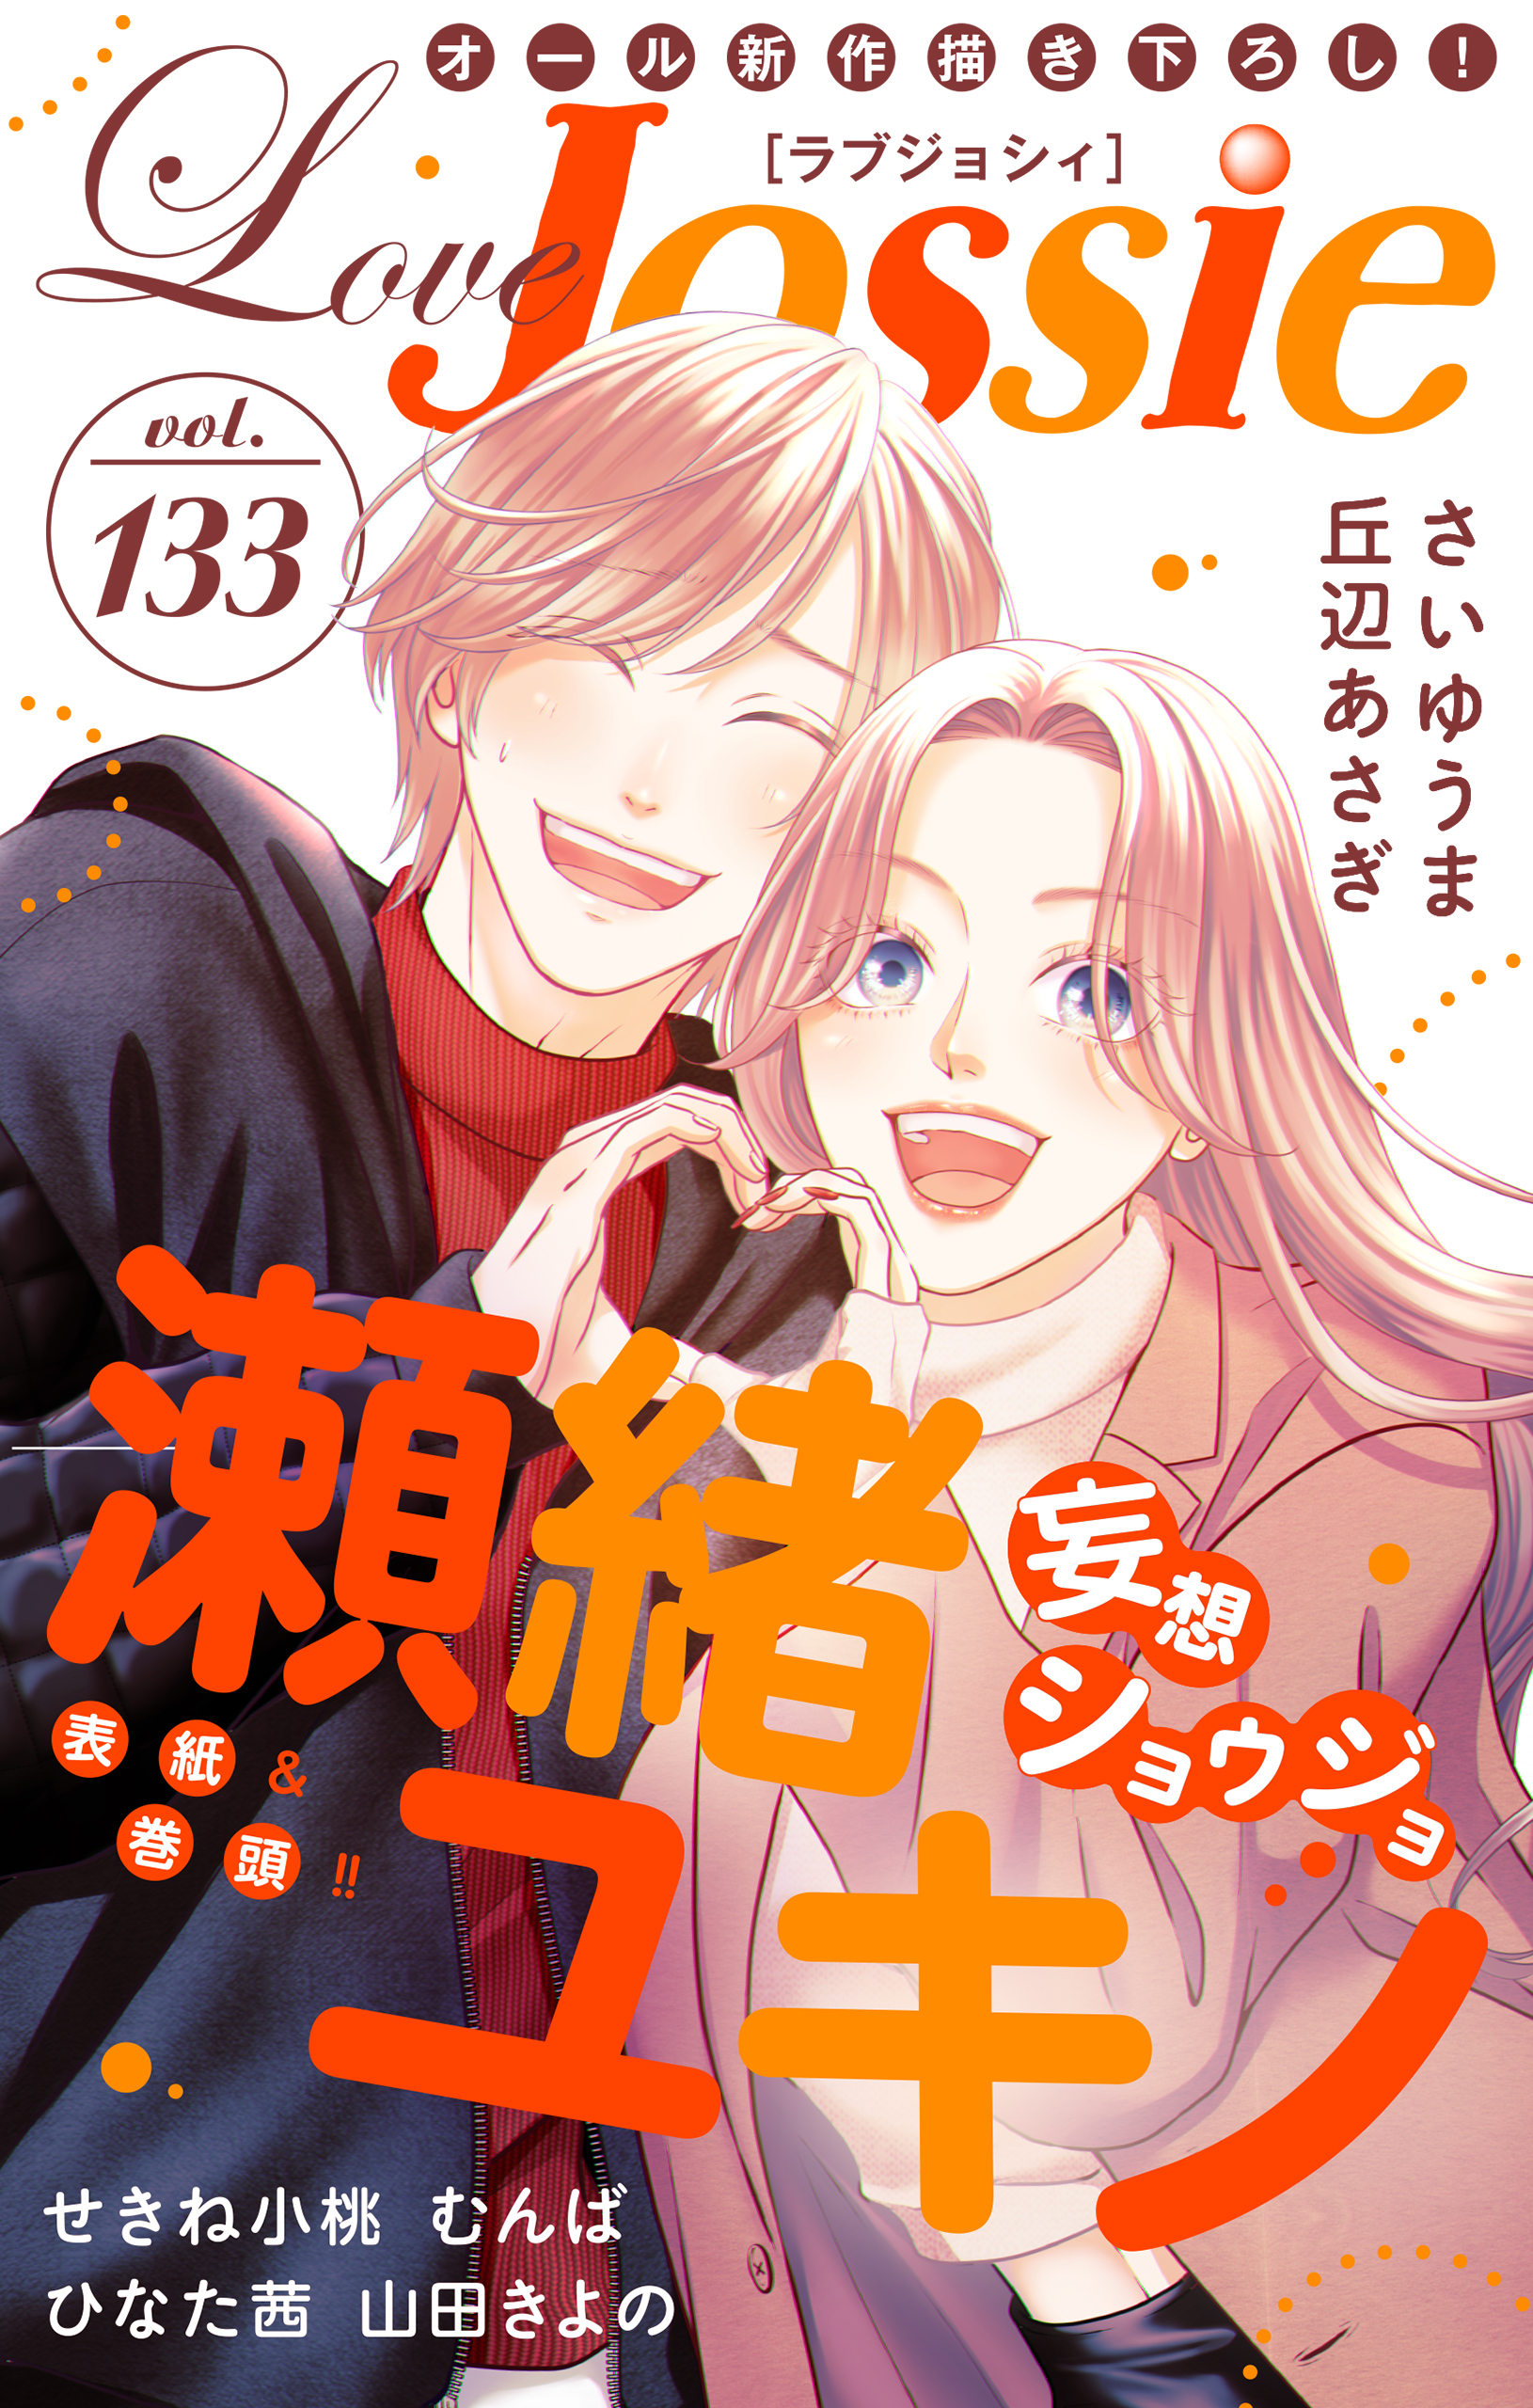 Love Jossie Vol.133 - 瀬緒ユキノ/さいゆうま - 漫画・ラノベ（小説